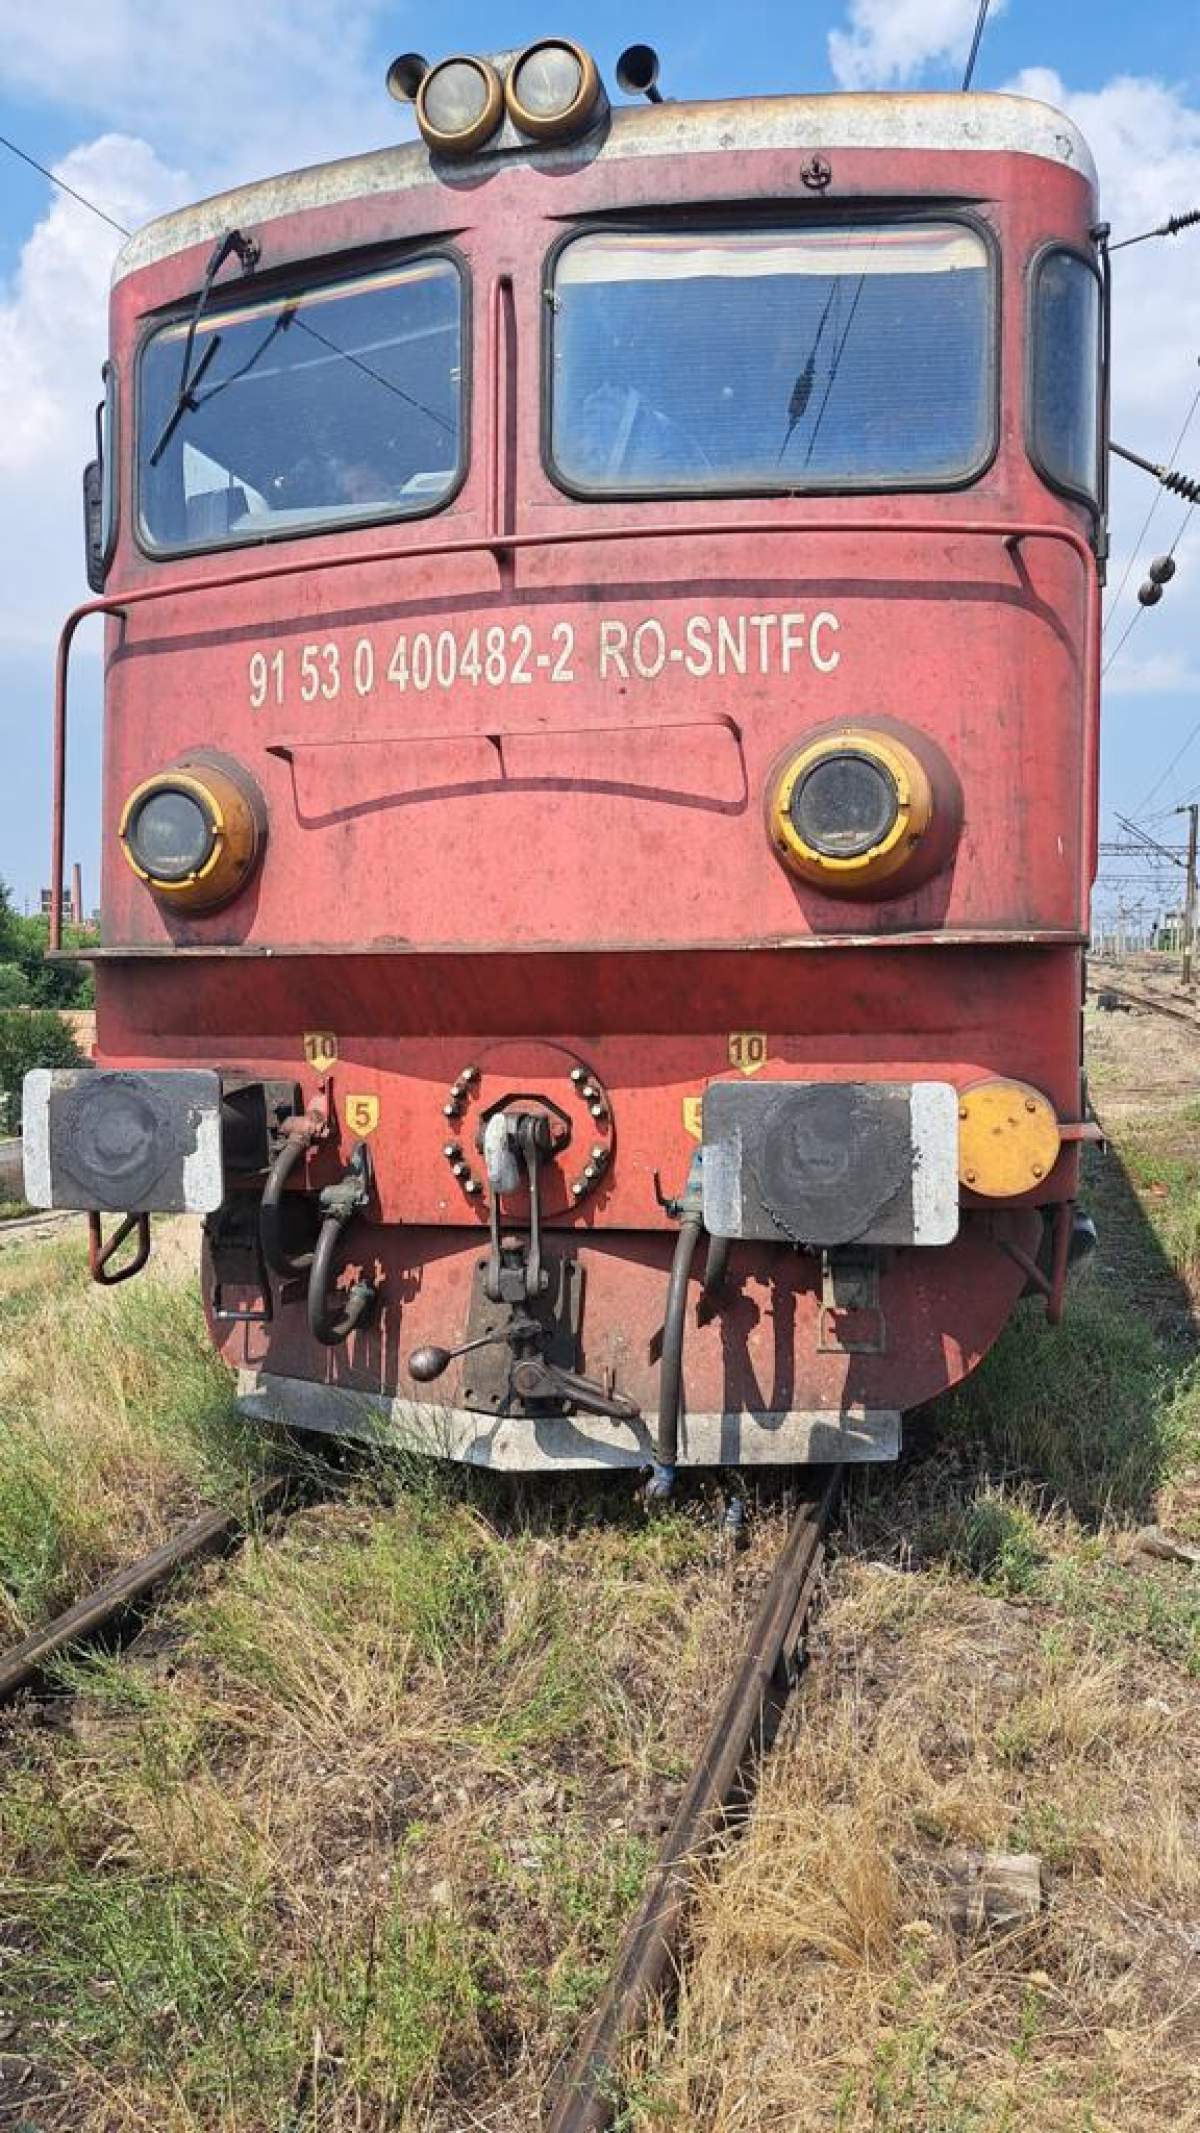 Două locomotive s-au ciocnit violent! Accidentul feroviar a avut loc la Roșiori / FOTO